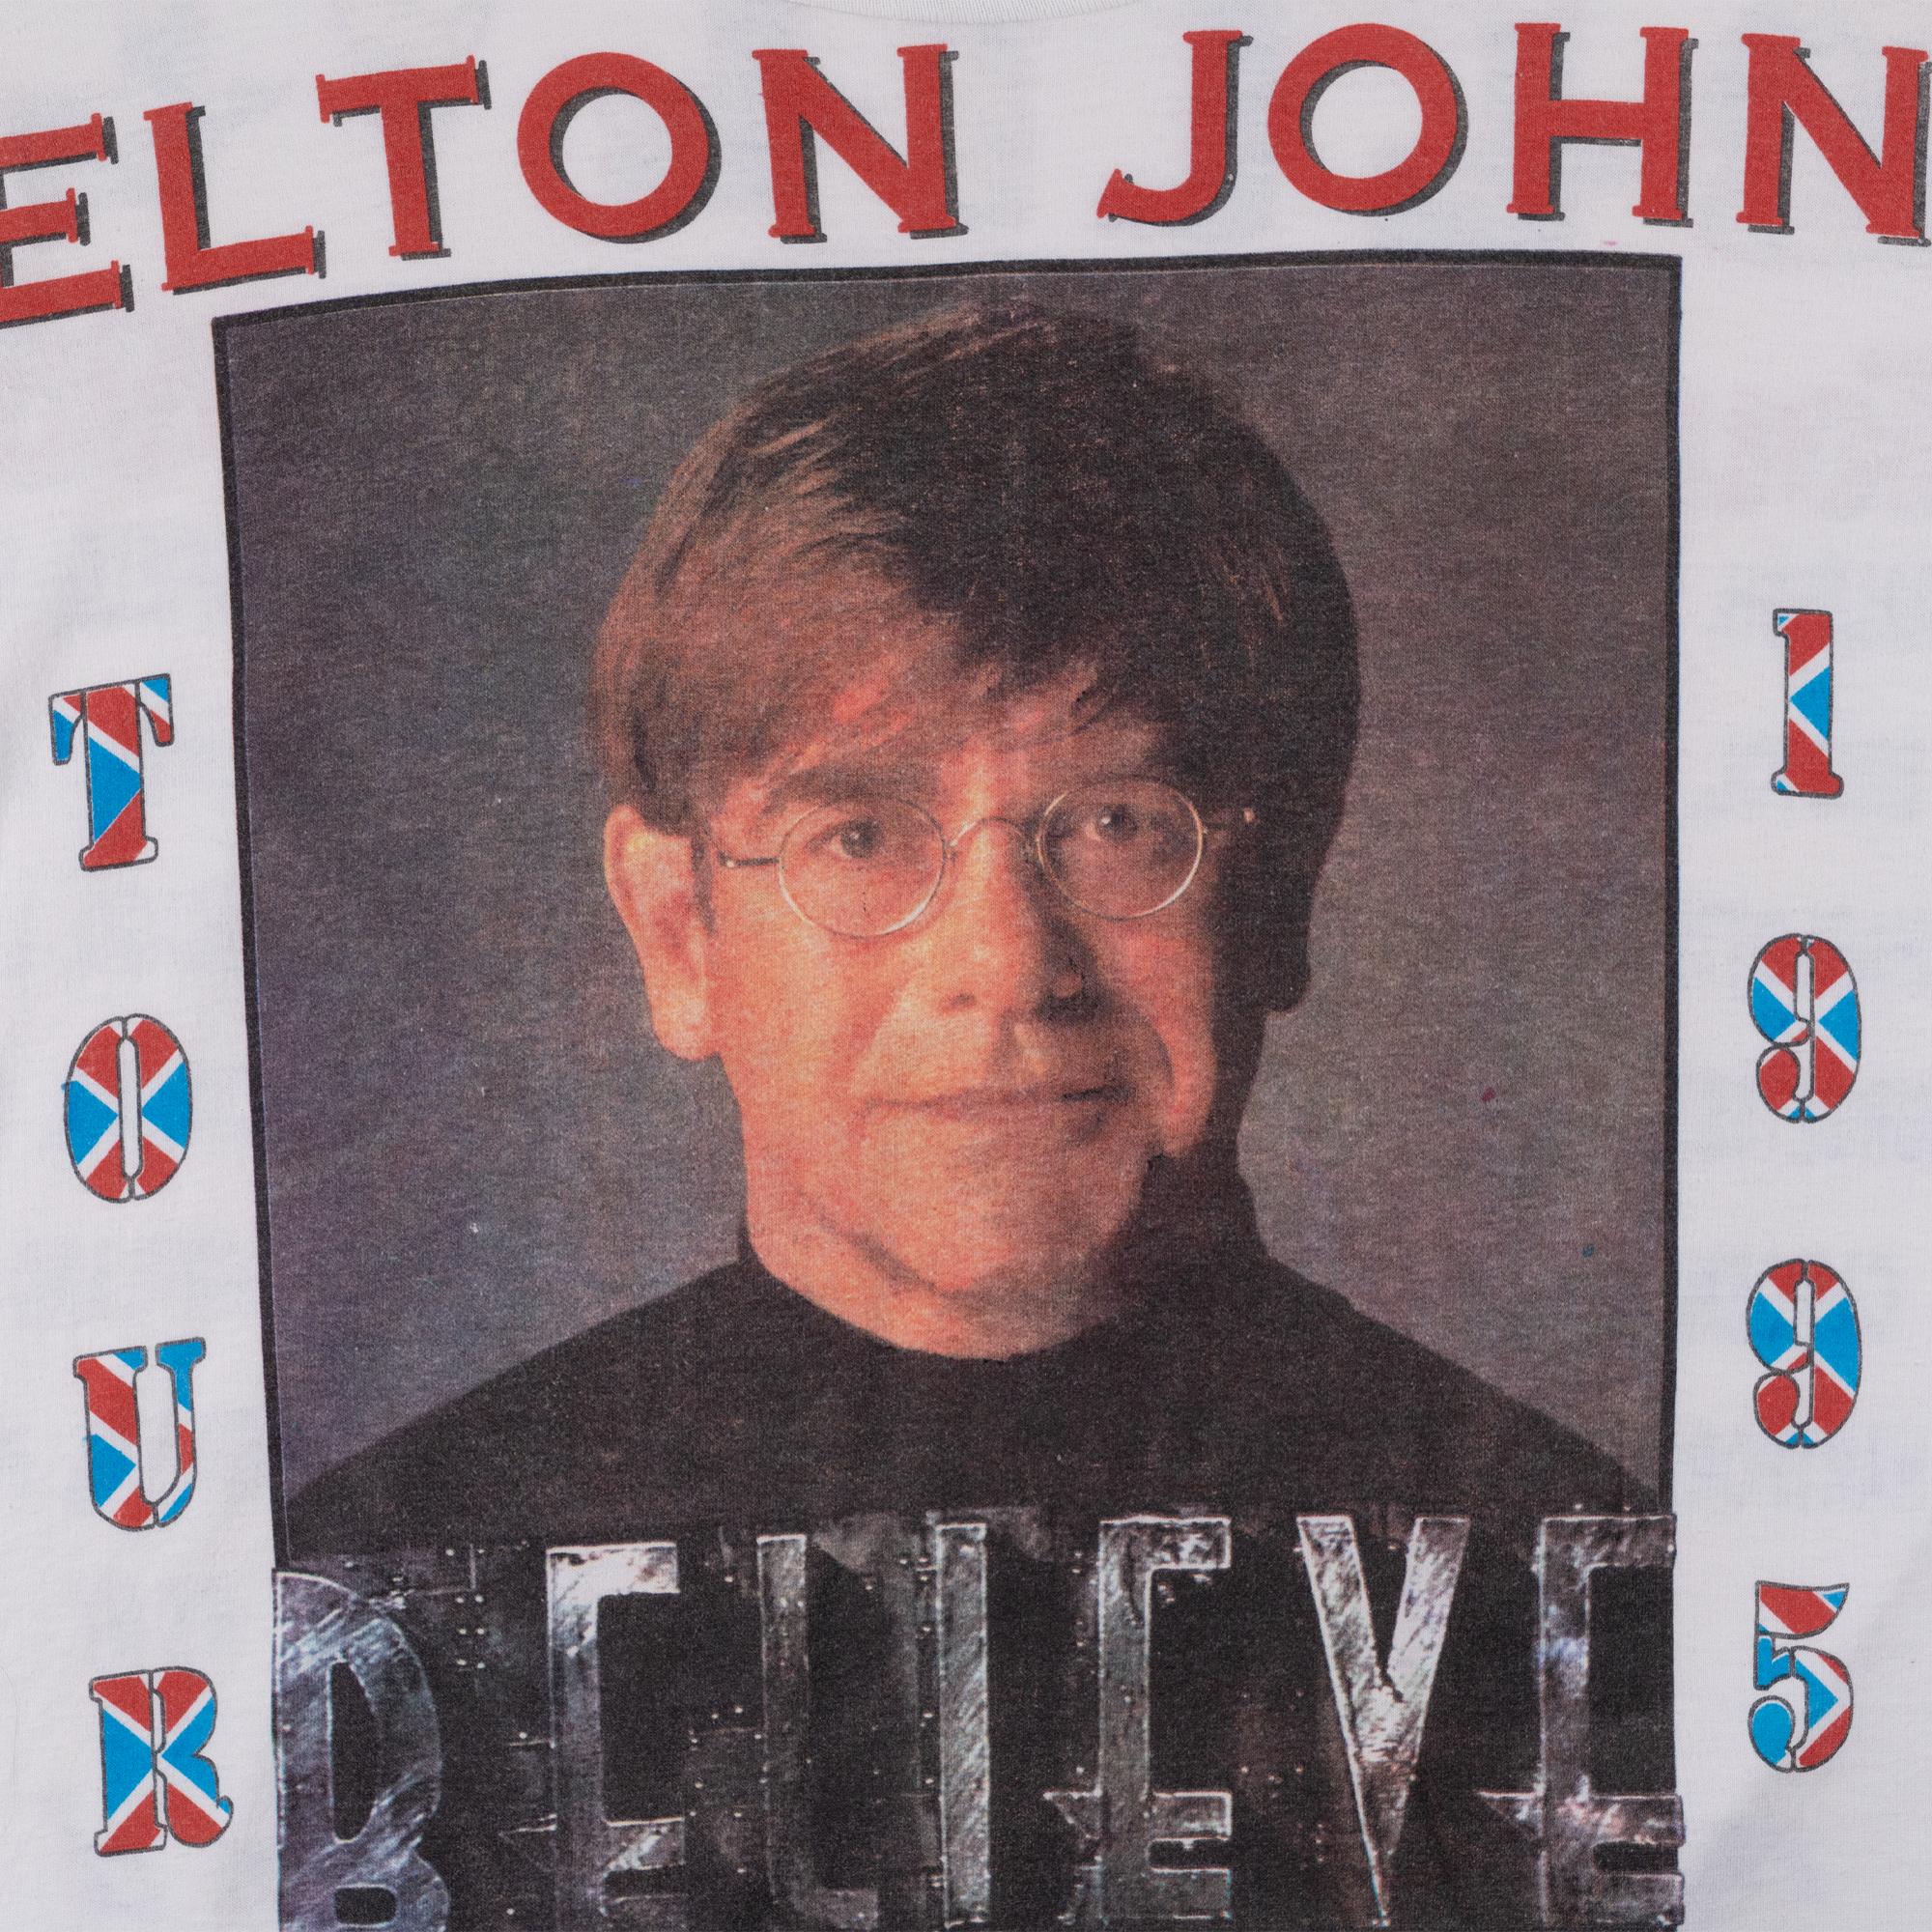 Elton John Belive Tour 1995 Tee White-PLUS